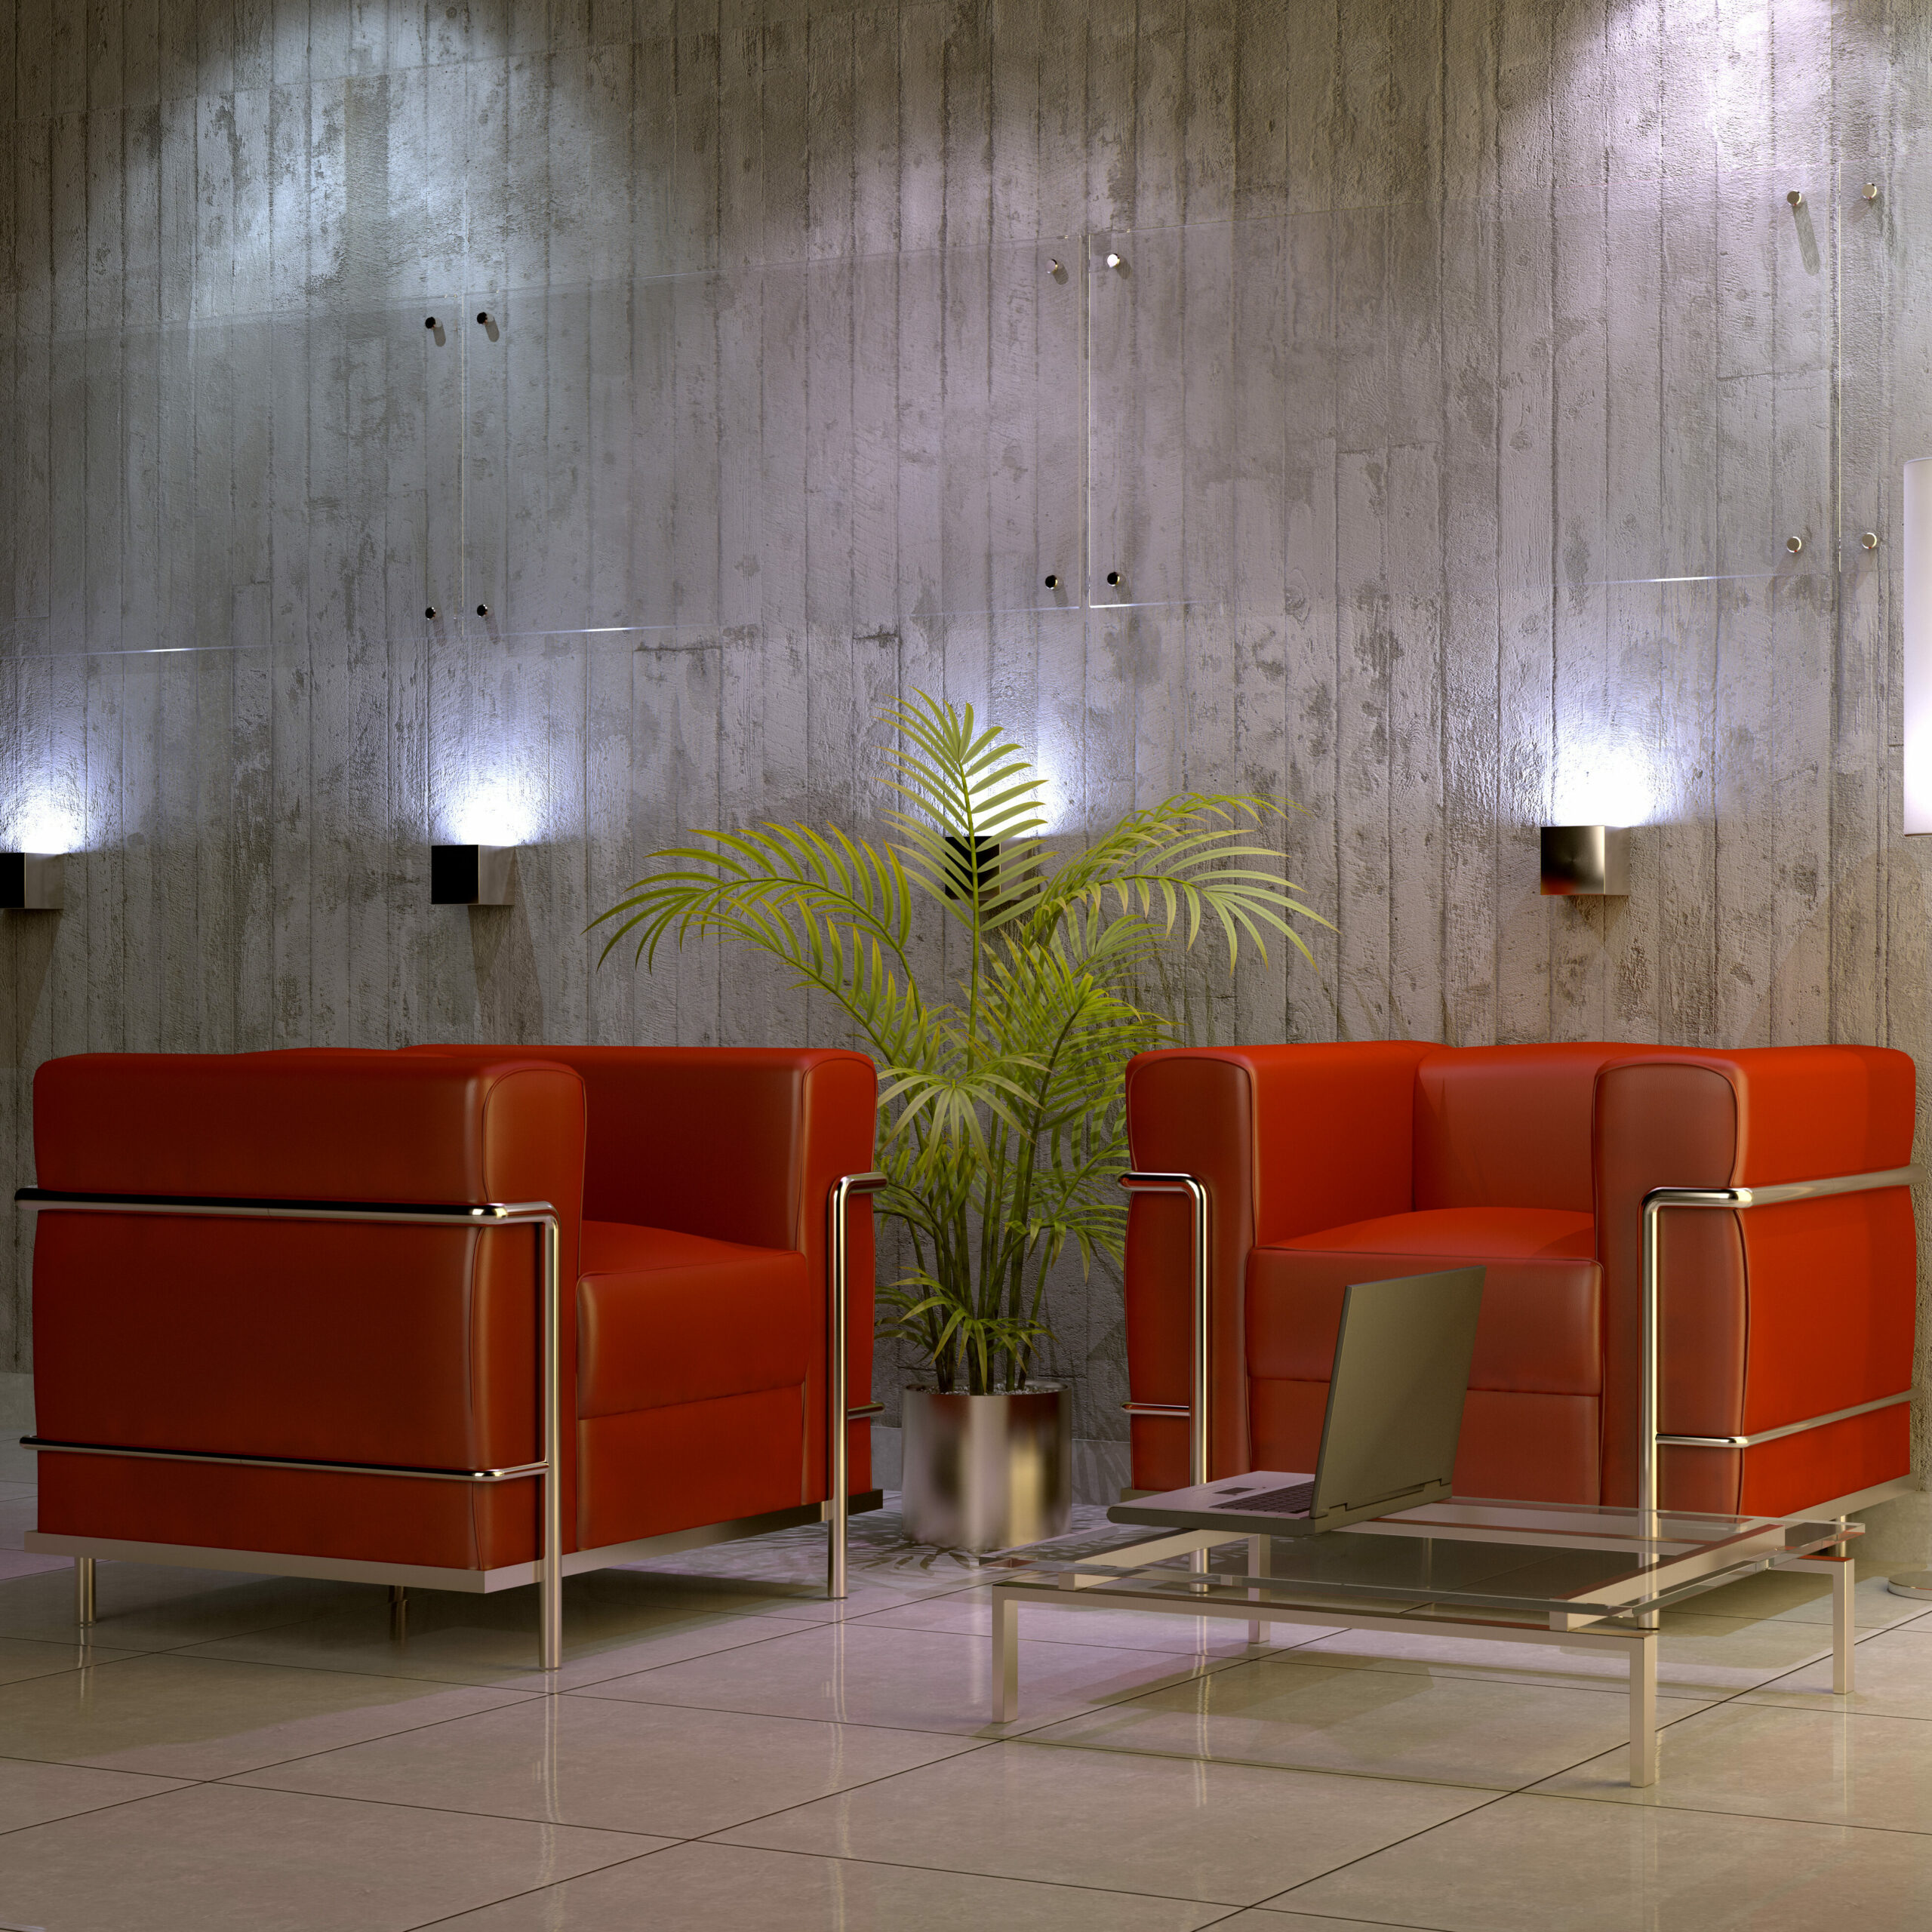 Outro lobby moderno com as poltronas Le Corbusier (LC2)